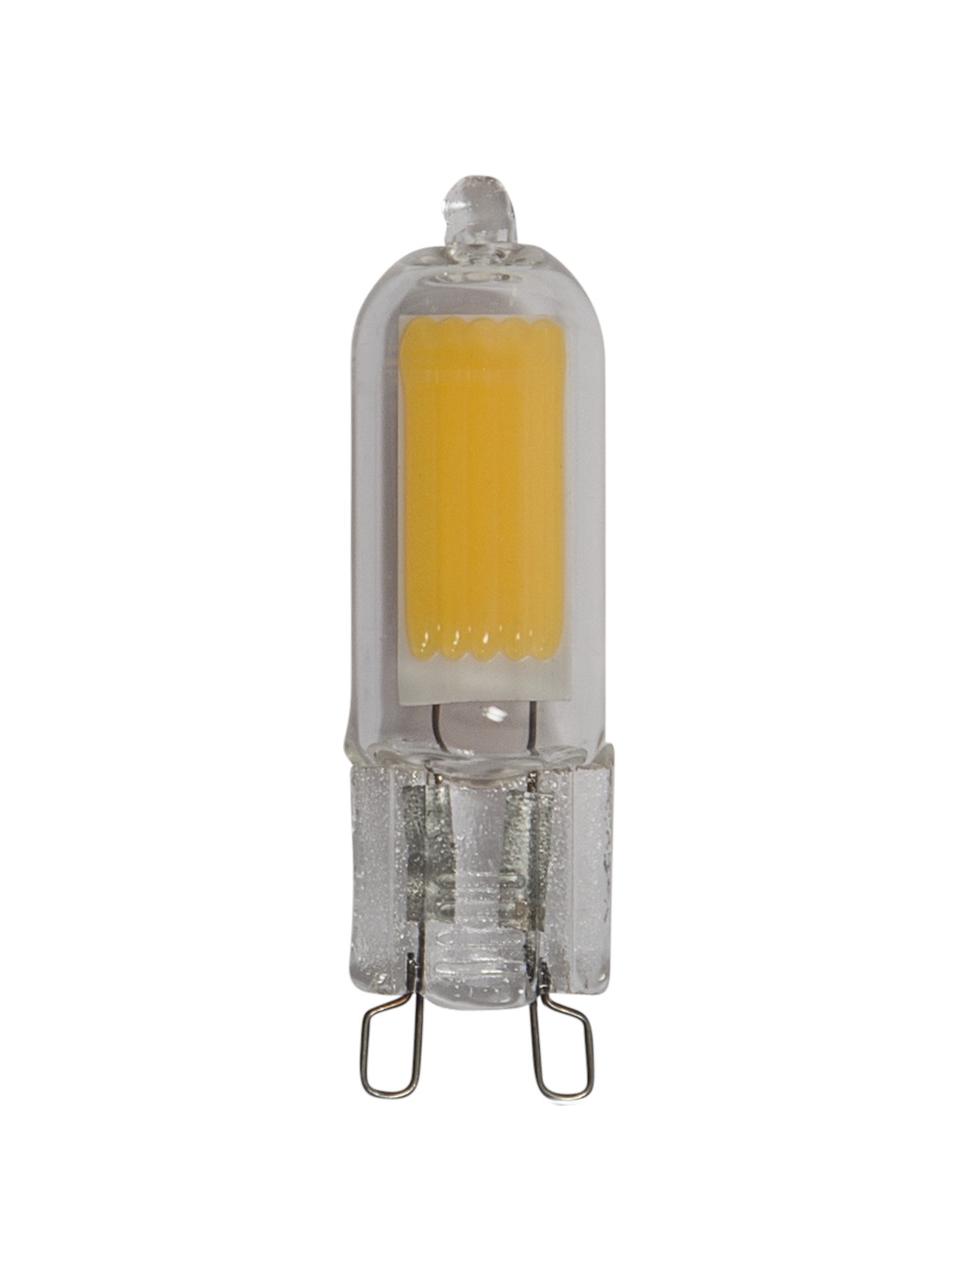 G9 Leuchtmittel, 200lm, warmweiß, 1 Stück, Leuchtmittelschirm: Glas, Leuchtmittelfassung: Glas, Transparent, Ø 1 x H 5 cm